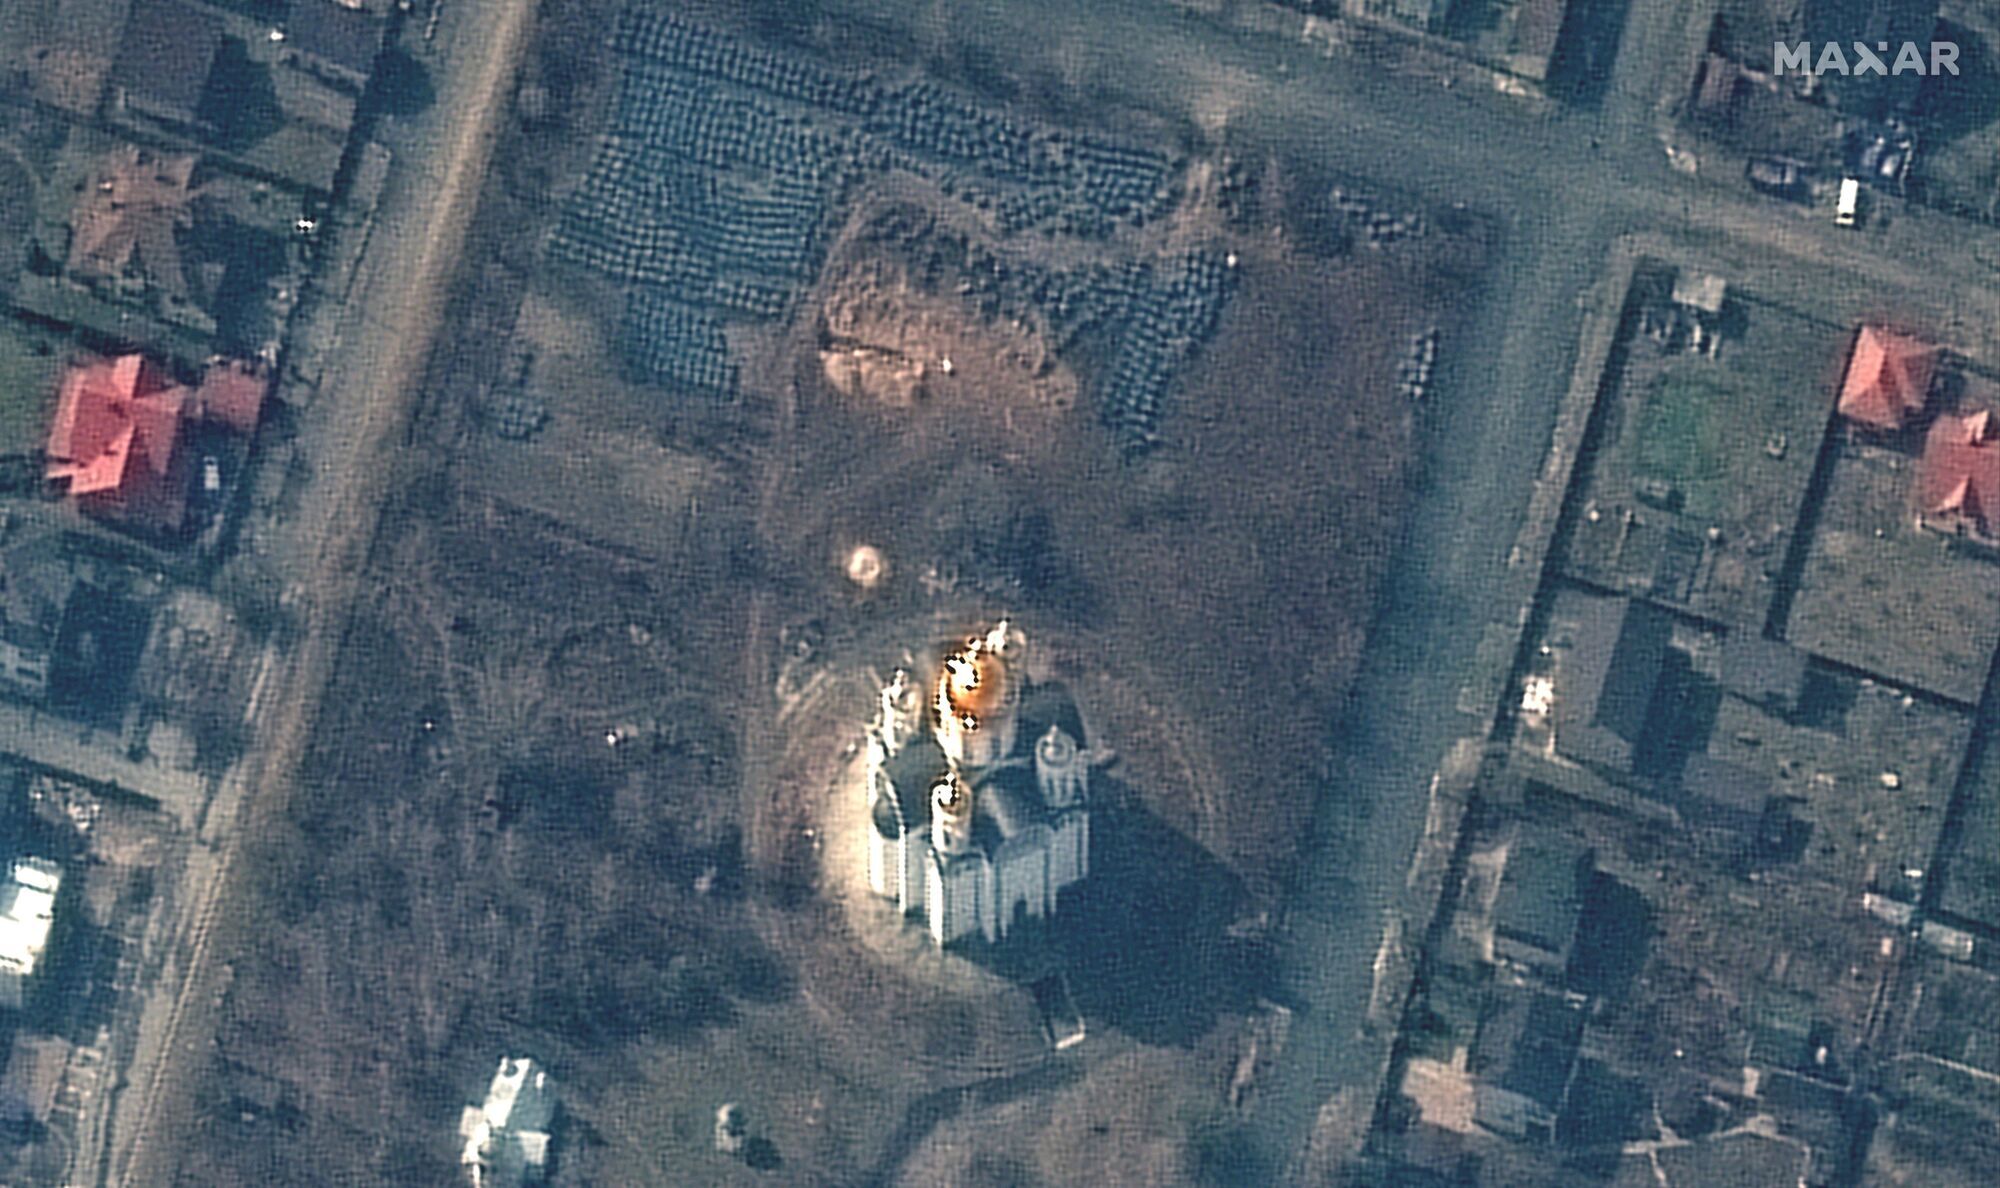 На супутниковому знімку від 31 березня помітно місце поховання з траншеєю довжиною приблизно 13,7 метра